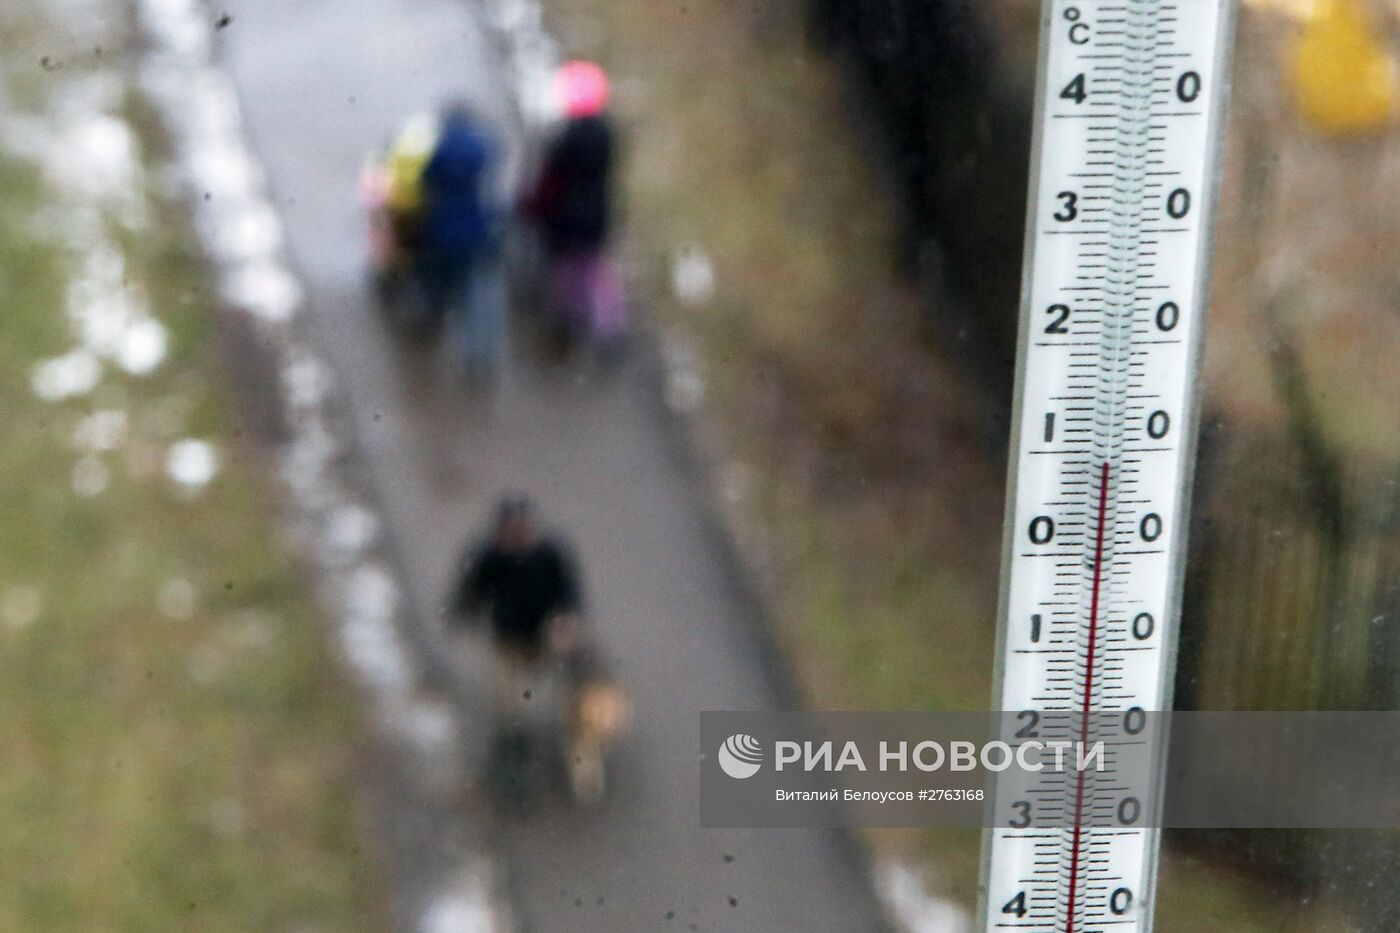 В Москве побит очередной температурный рекорд